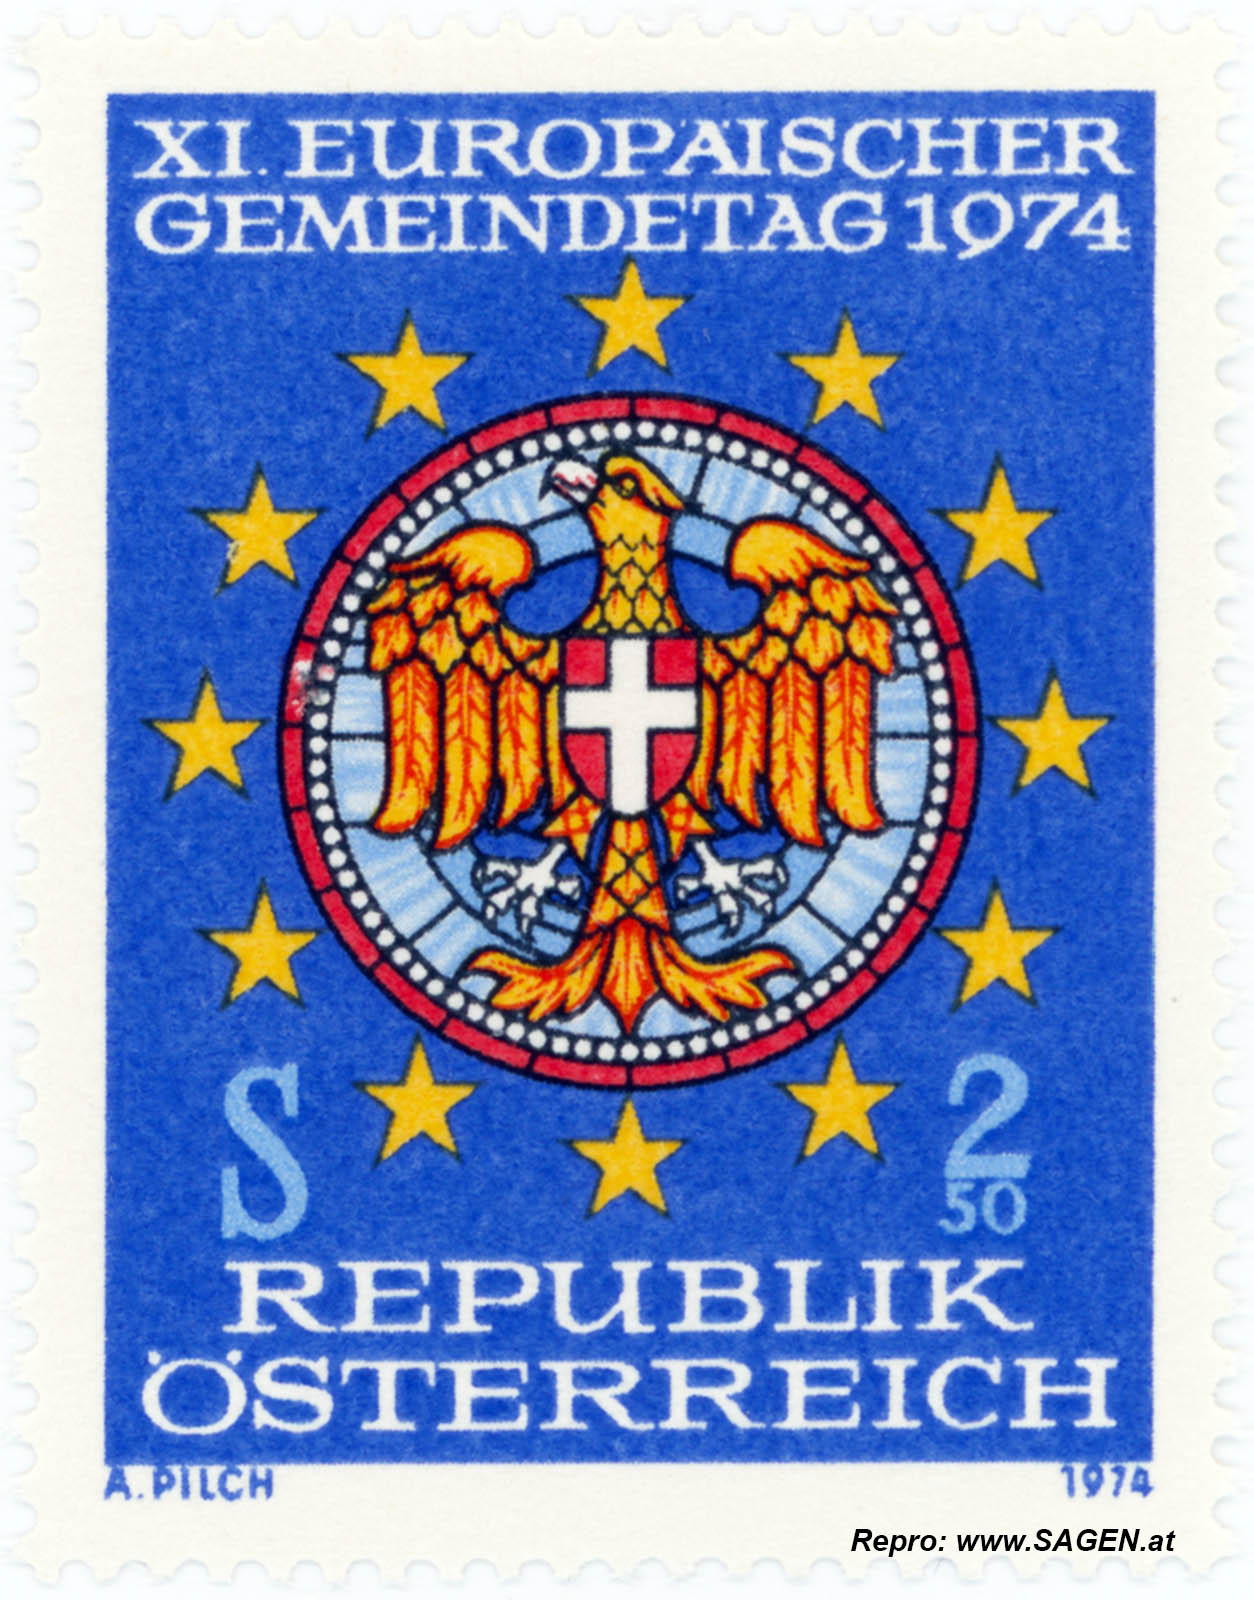 XI. Europäischer Gemeindetag 1974, Sondermarke